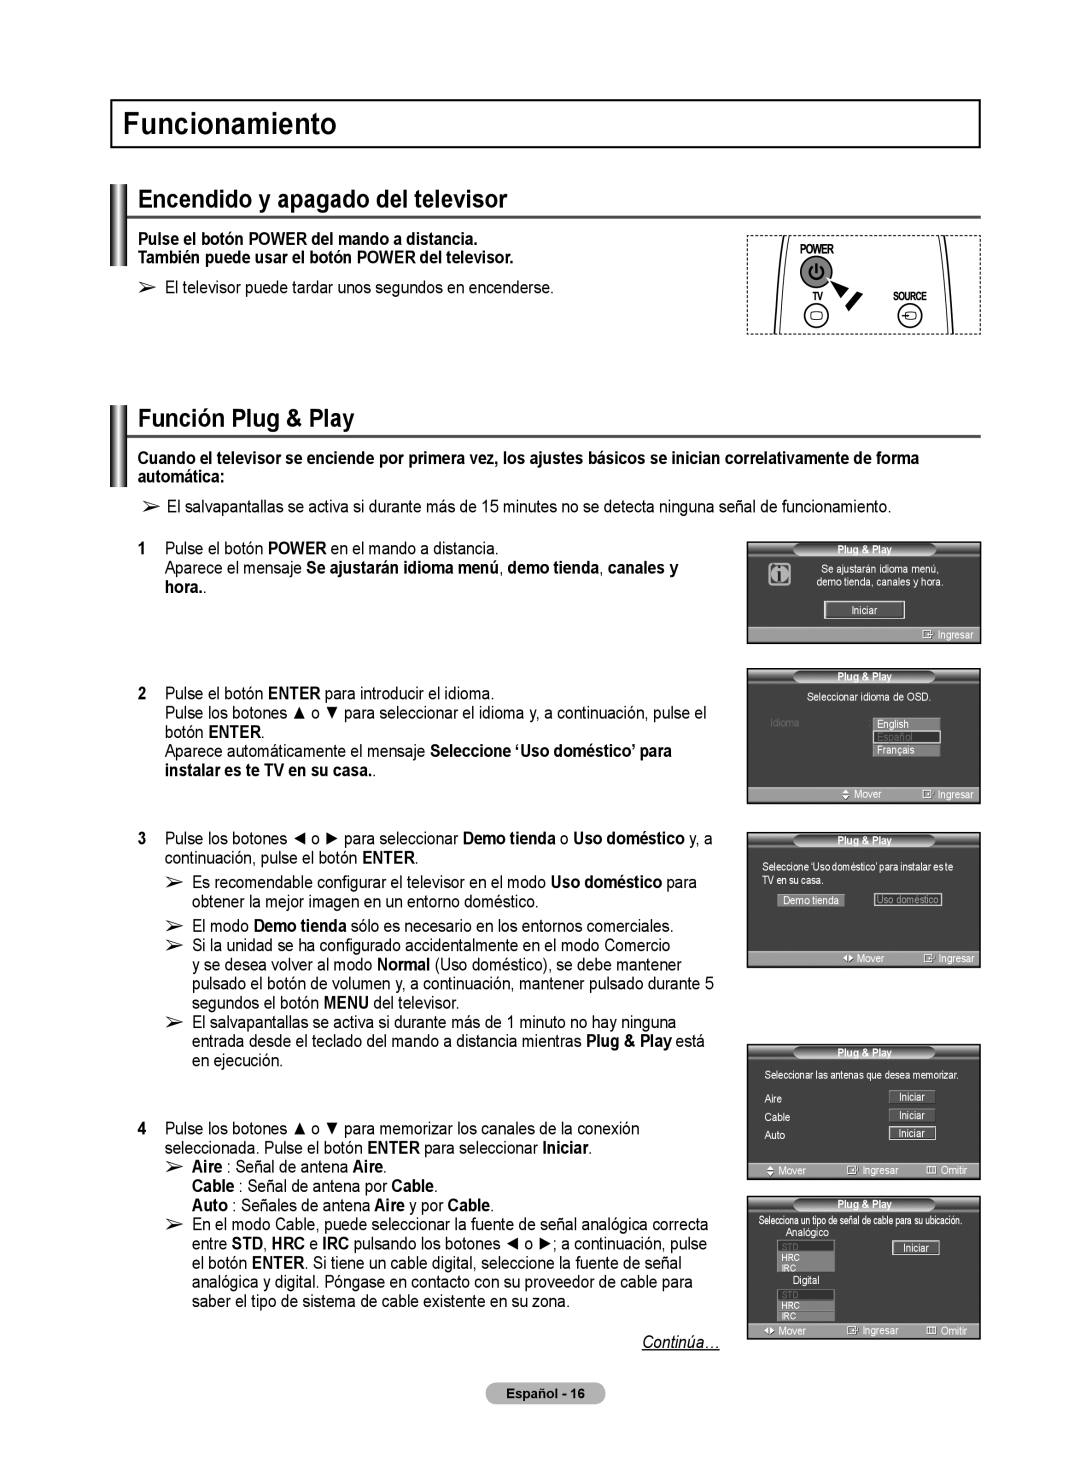 Samsung 460 user manual Funcionamiento, Encendido y apagado del televisor, Función Plug & Play, Continúa… 